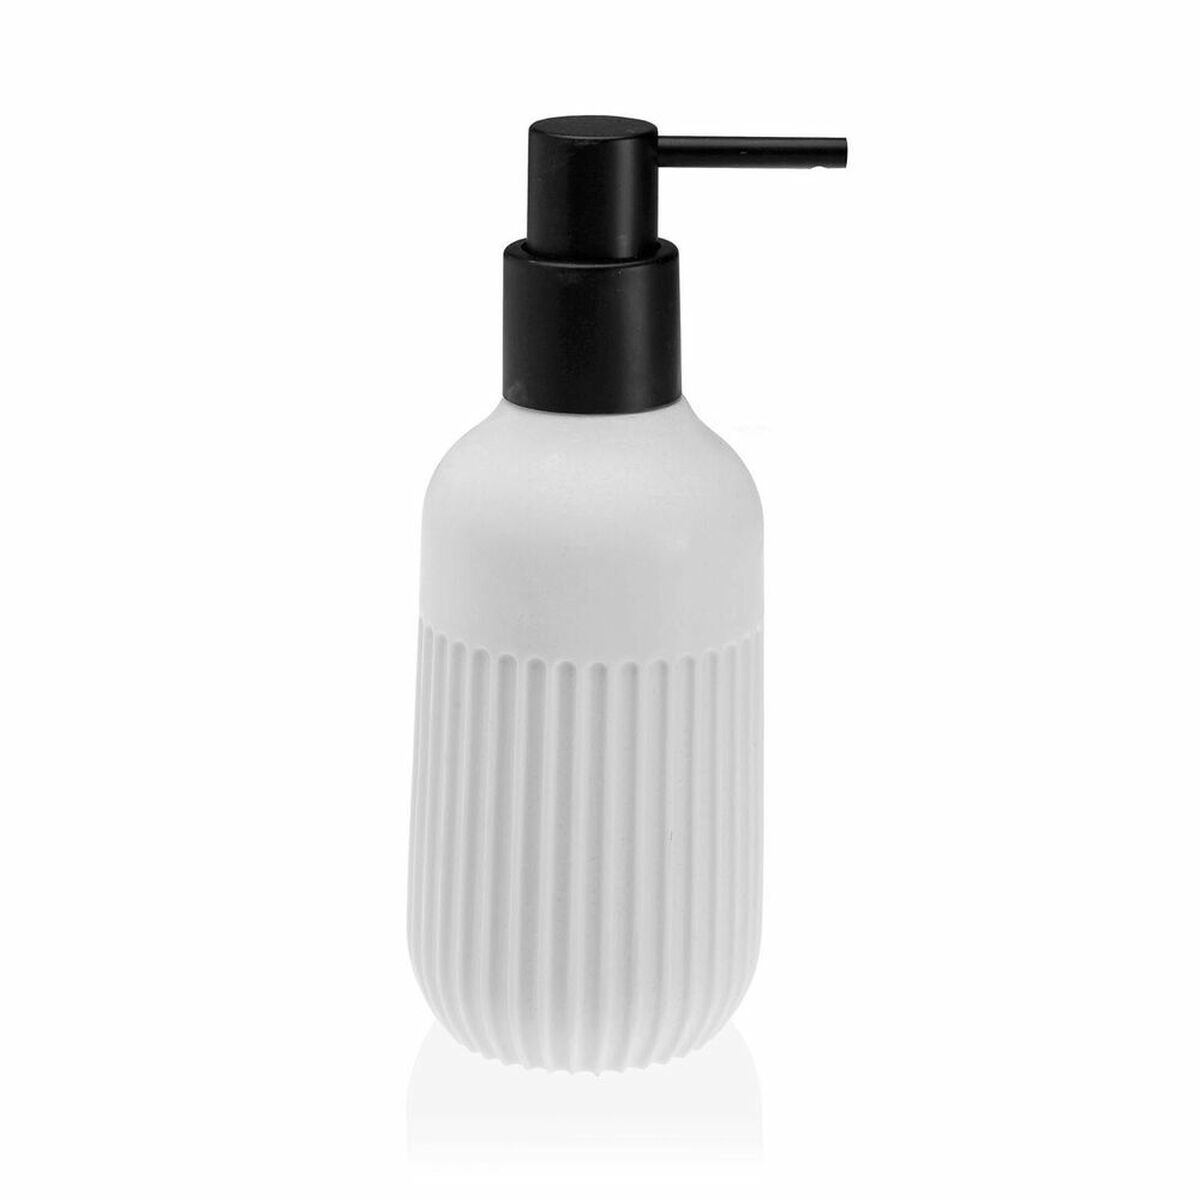 Soap dispenser white resin